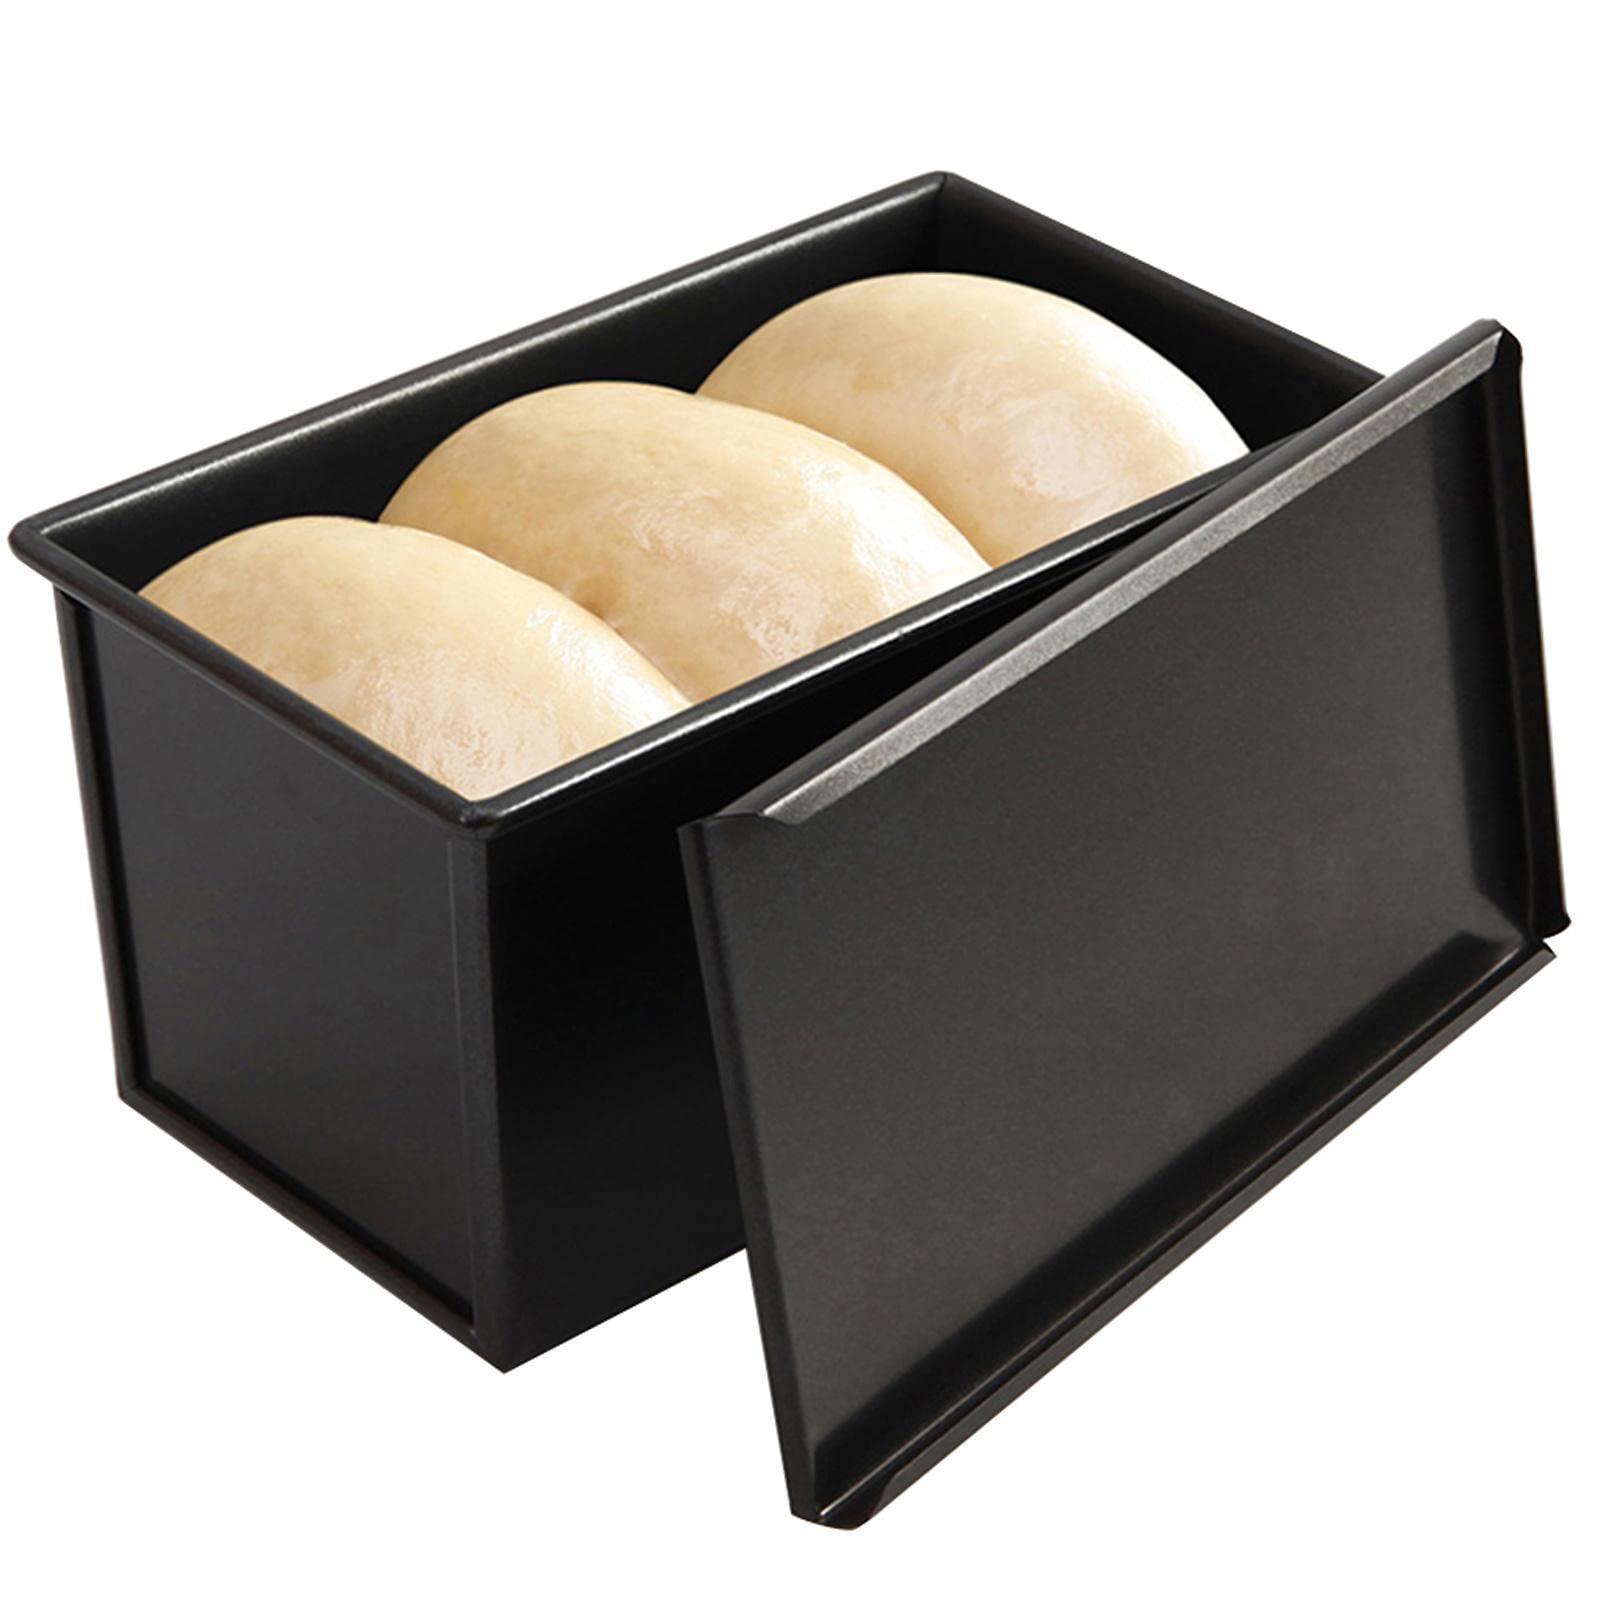 delr Kastenform mit Deckel | Hochhitzebeständige Kastenform mit Deckel, aluminisierte Antihaft-Toastbox zum Backen im Ofen - Haushaltssichere Backform zum Backen von Brot, Käsekuchen